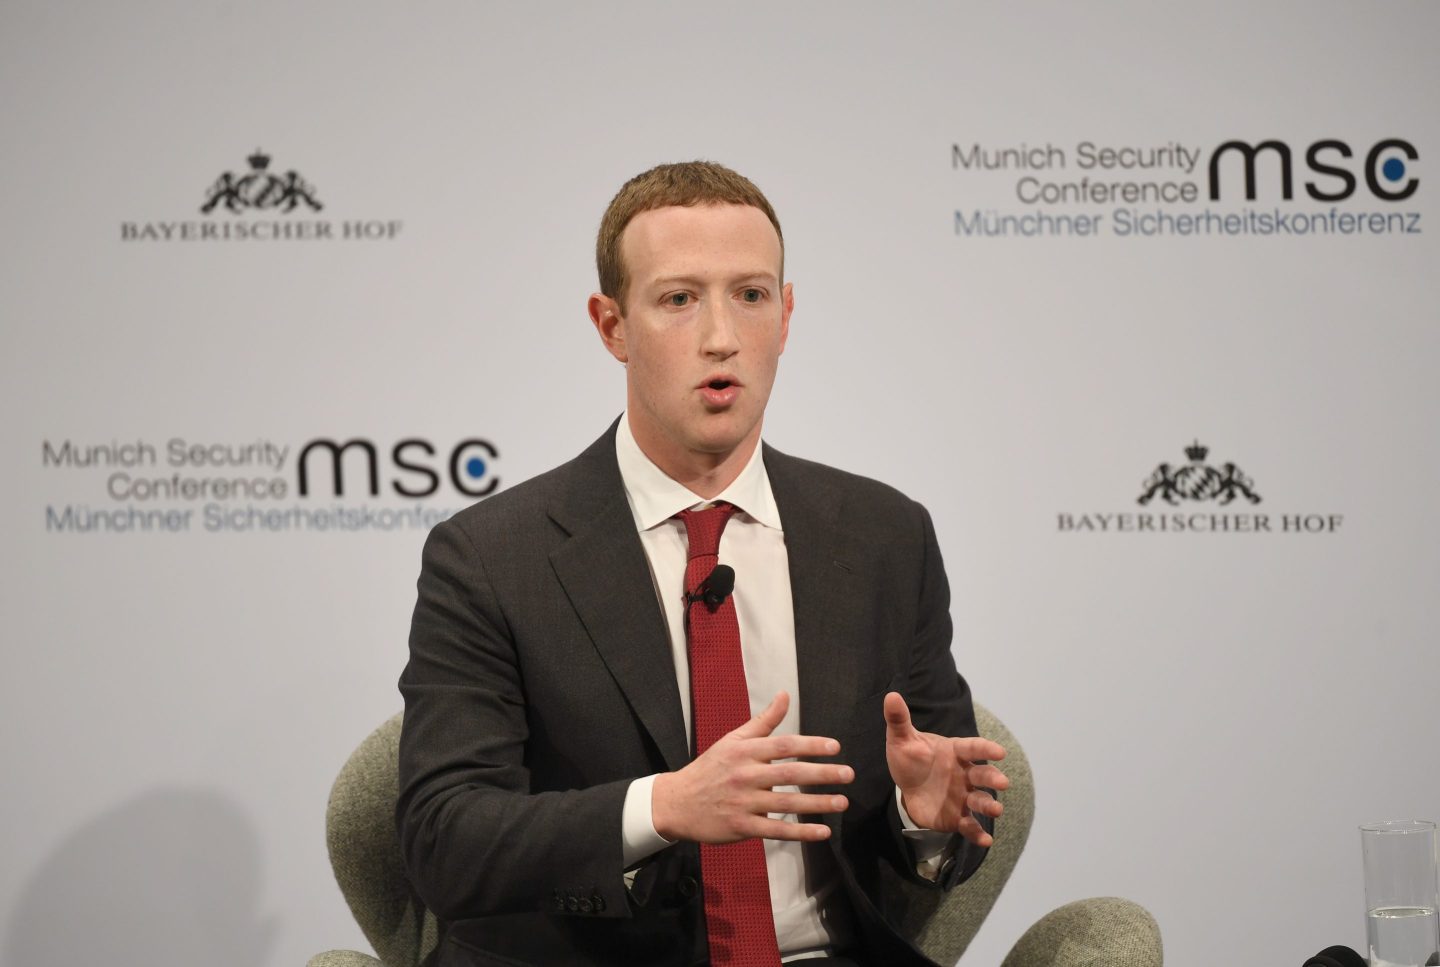 Meta CEO Mark Zuckerberg speaking on stage during an event in Munich.